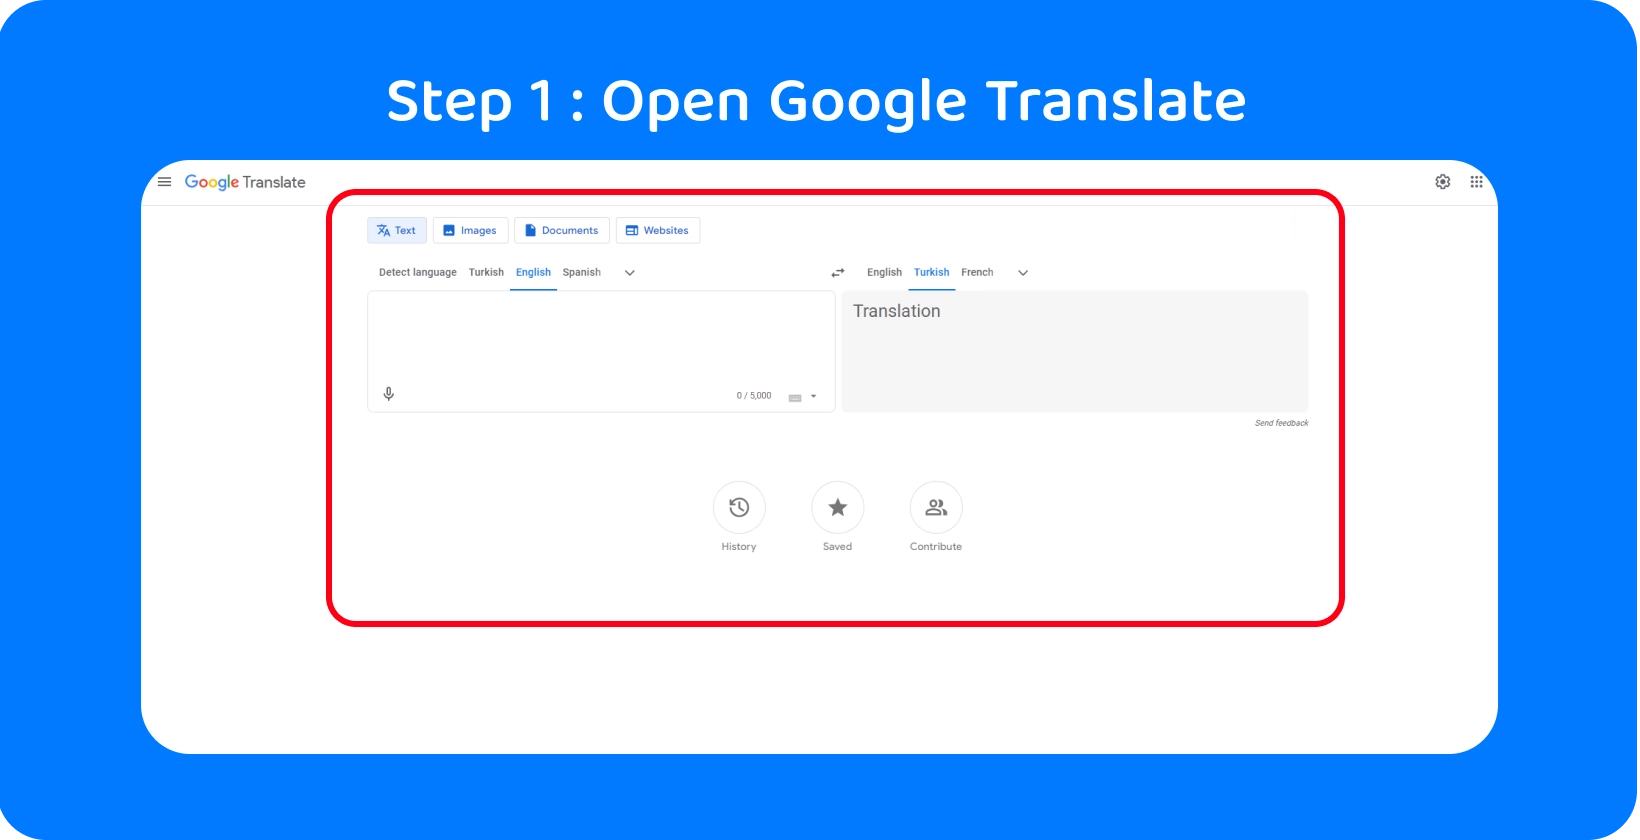 Google अनुवाद इंटरफ़ेस बोले गए शब्दों को पाठ में बदलने के लिए तैयार है, प्रक्रिया में चरण 1 को दर्शाता है।